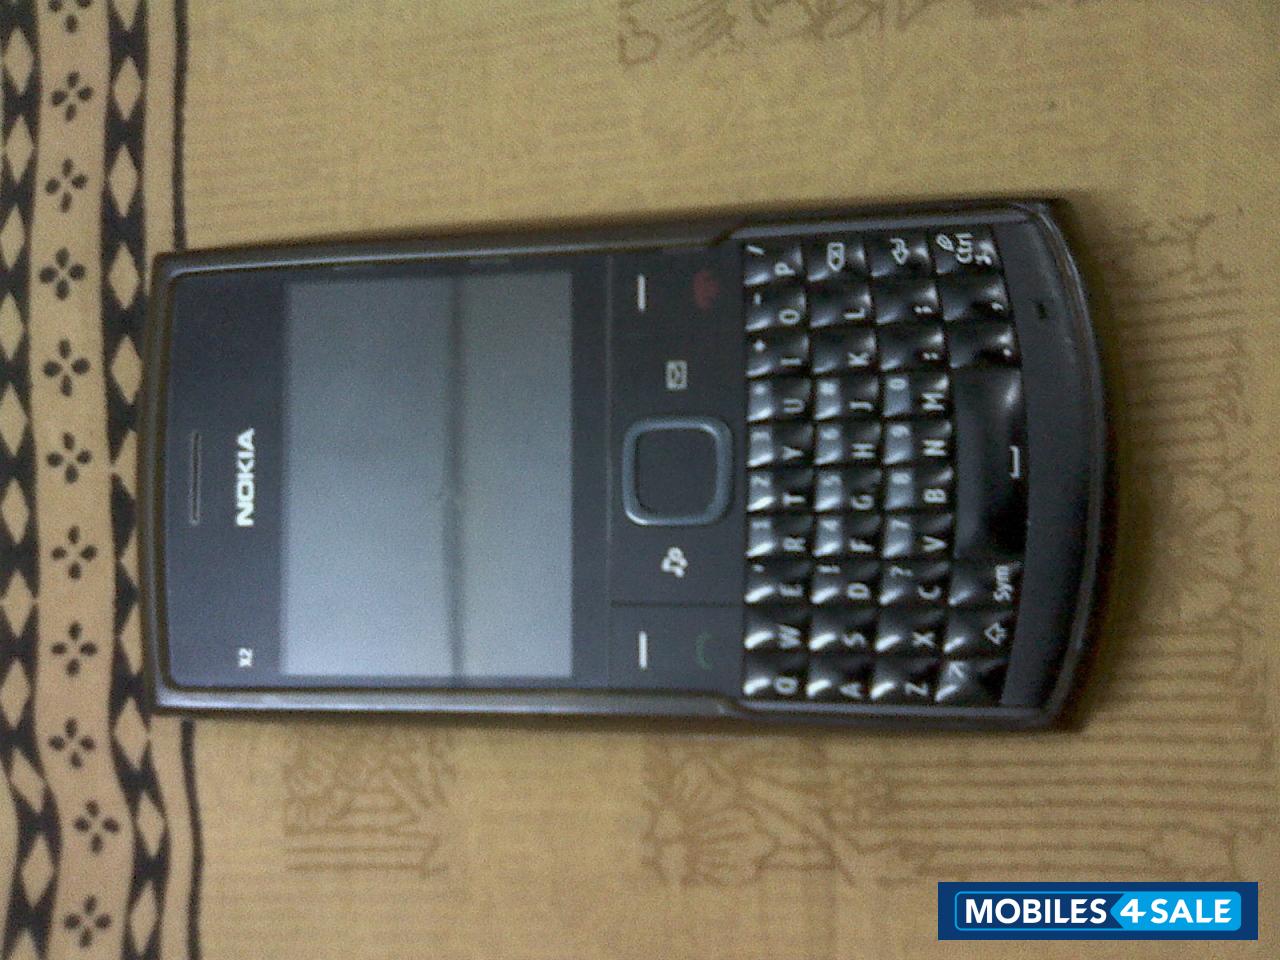 Black Nokia X2-01